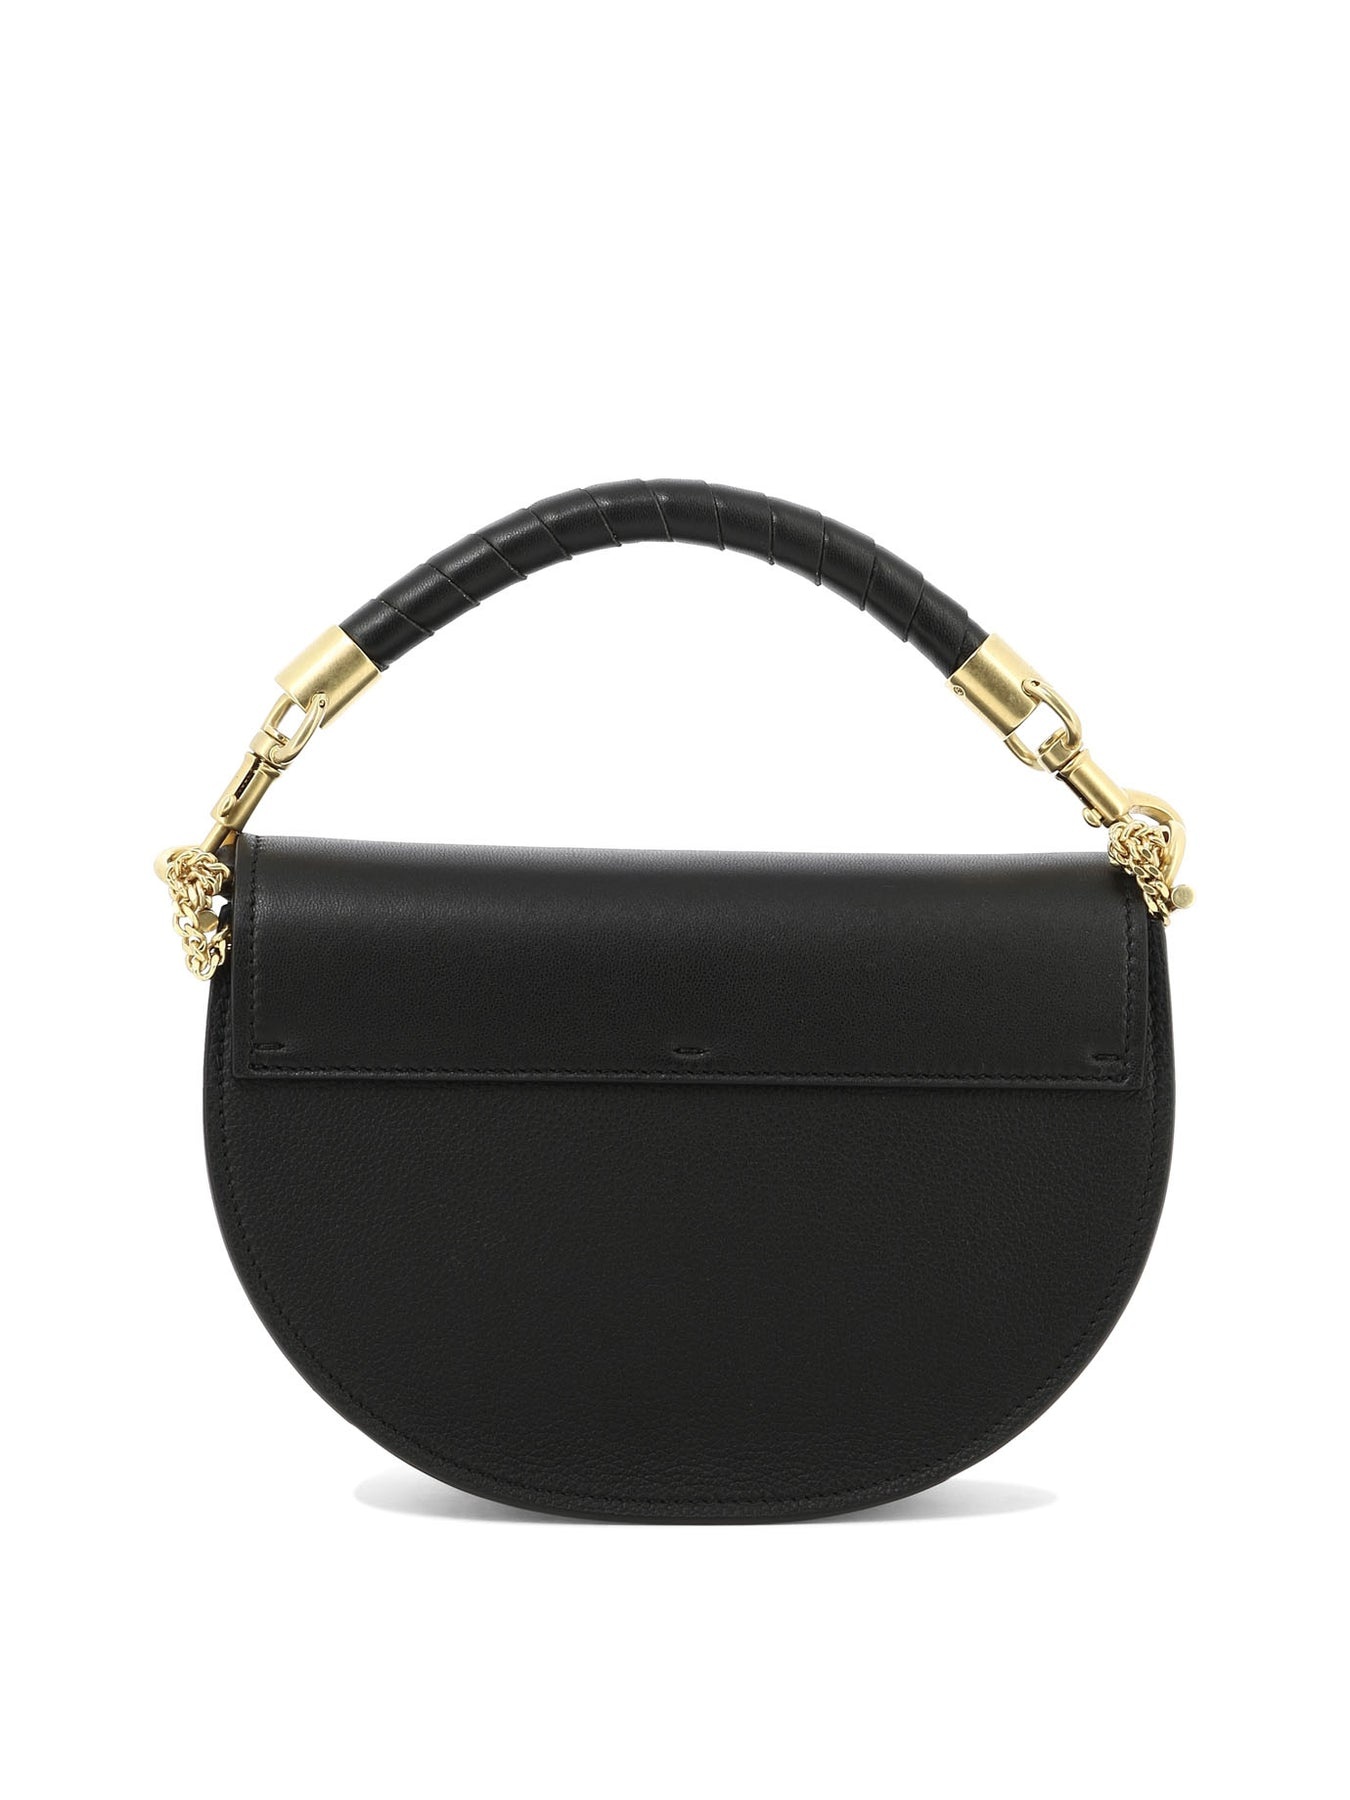 Marcie Handbags Black - 3